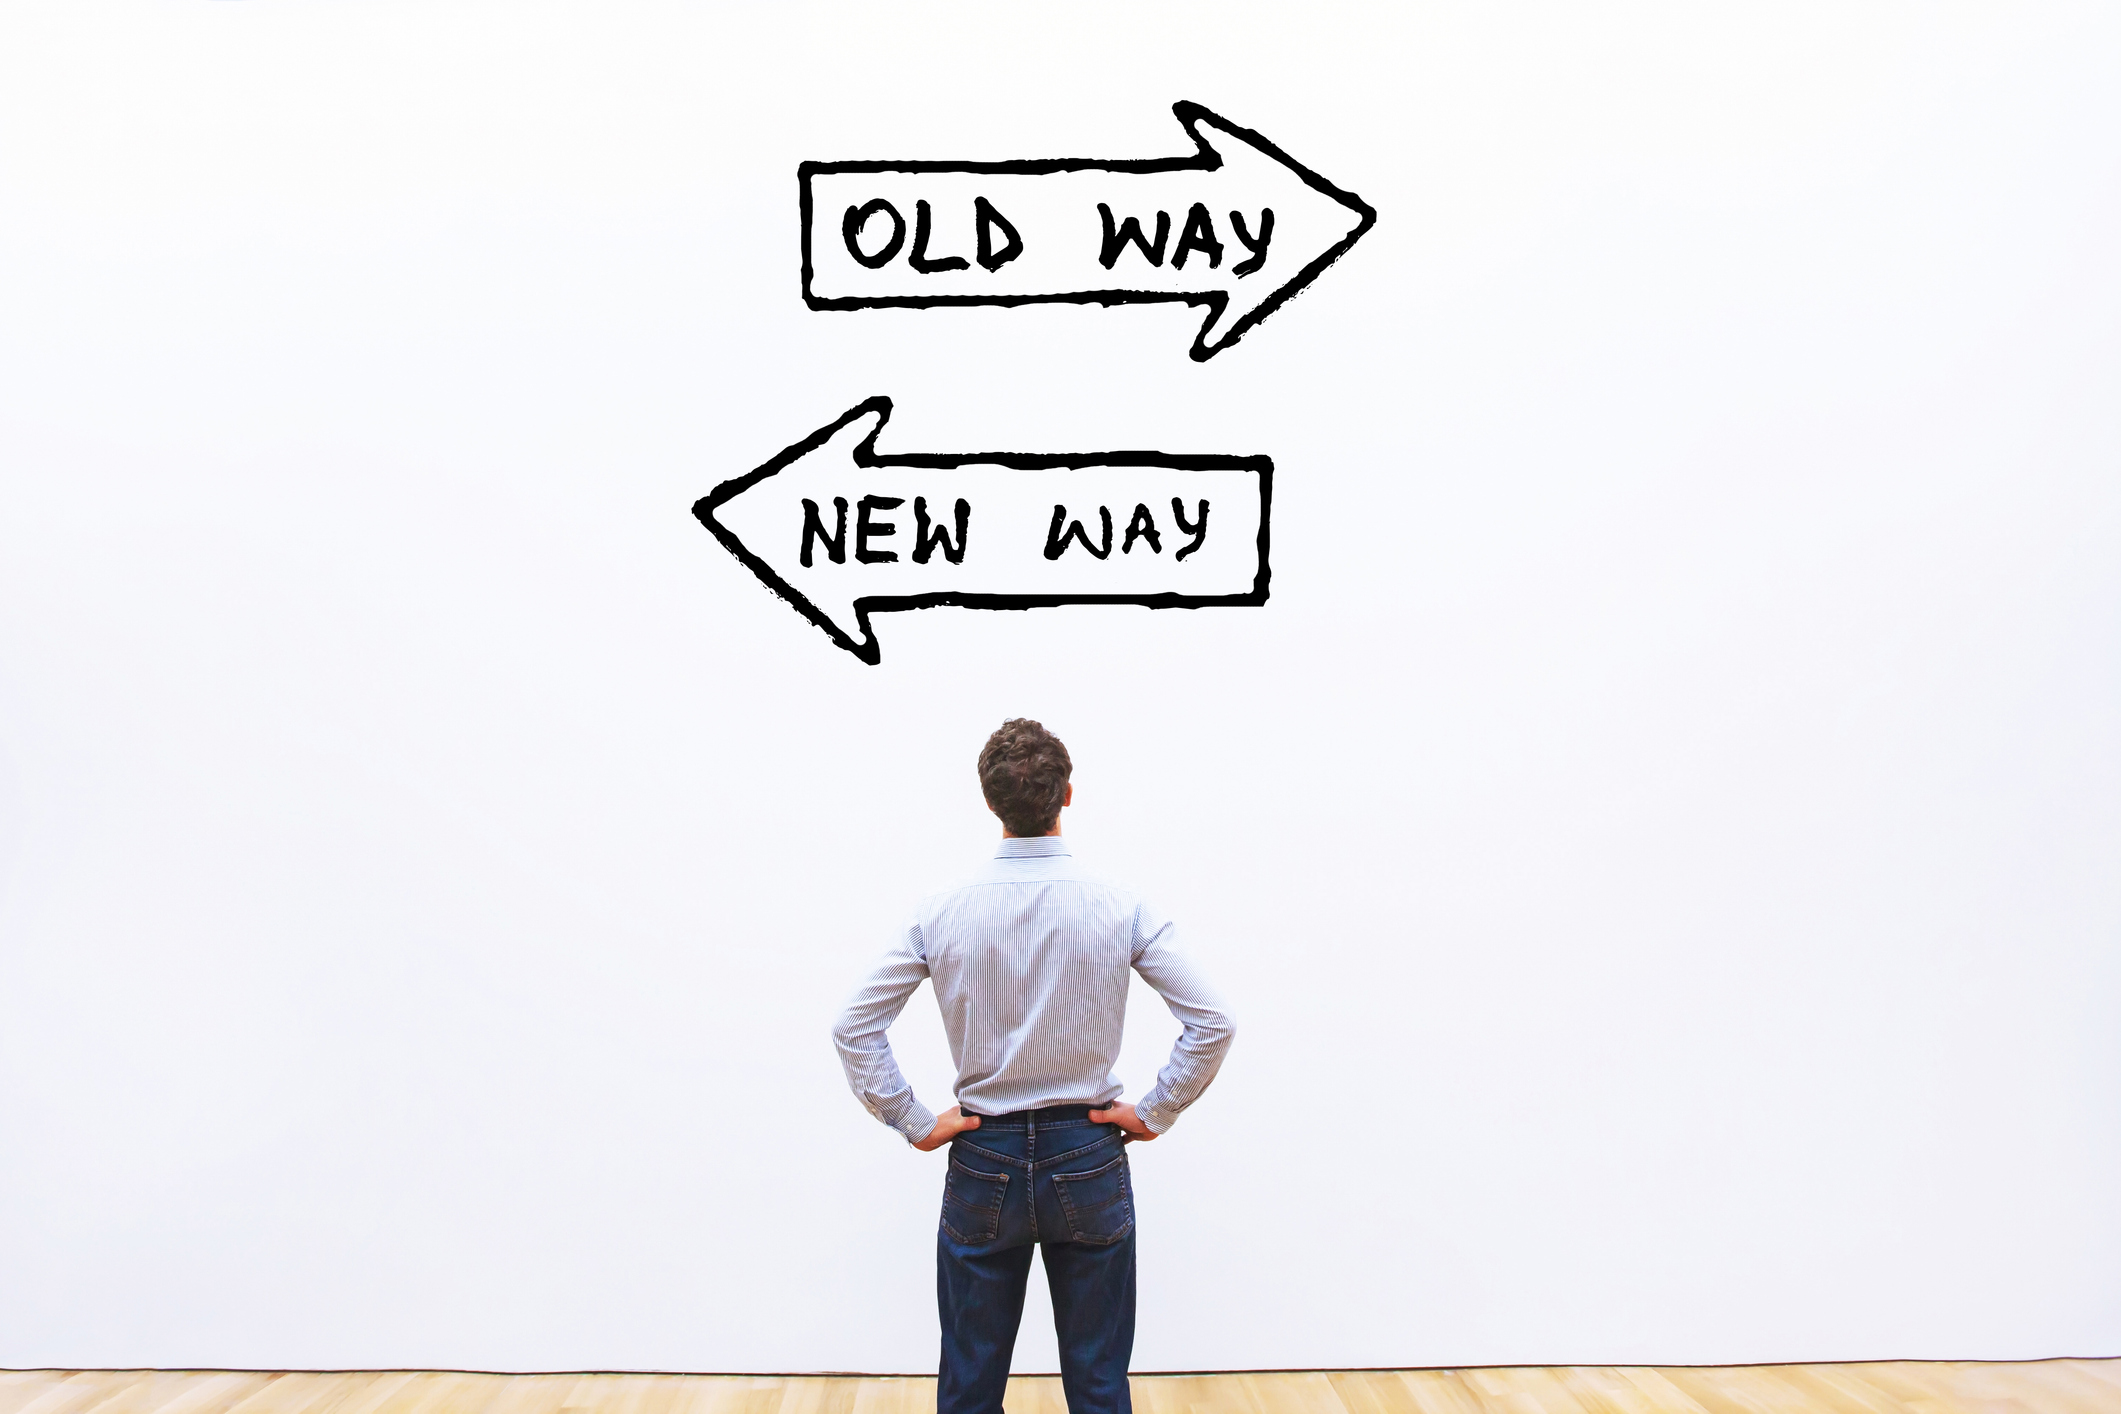 Mann står ved to skilt hvor det står "old way" og "New way"